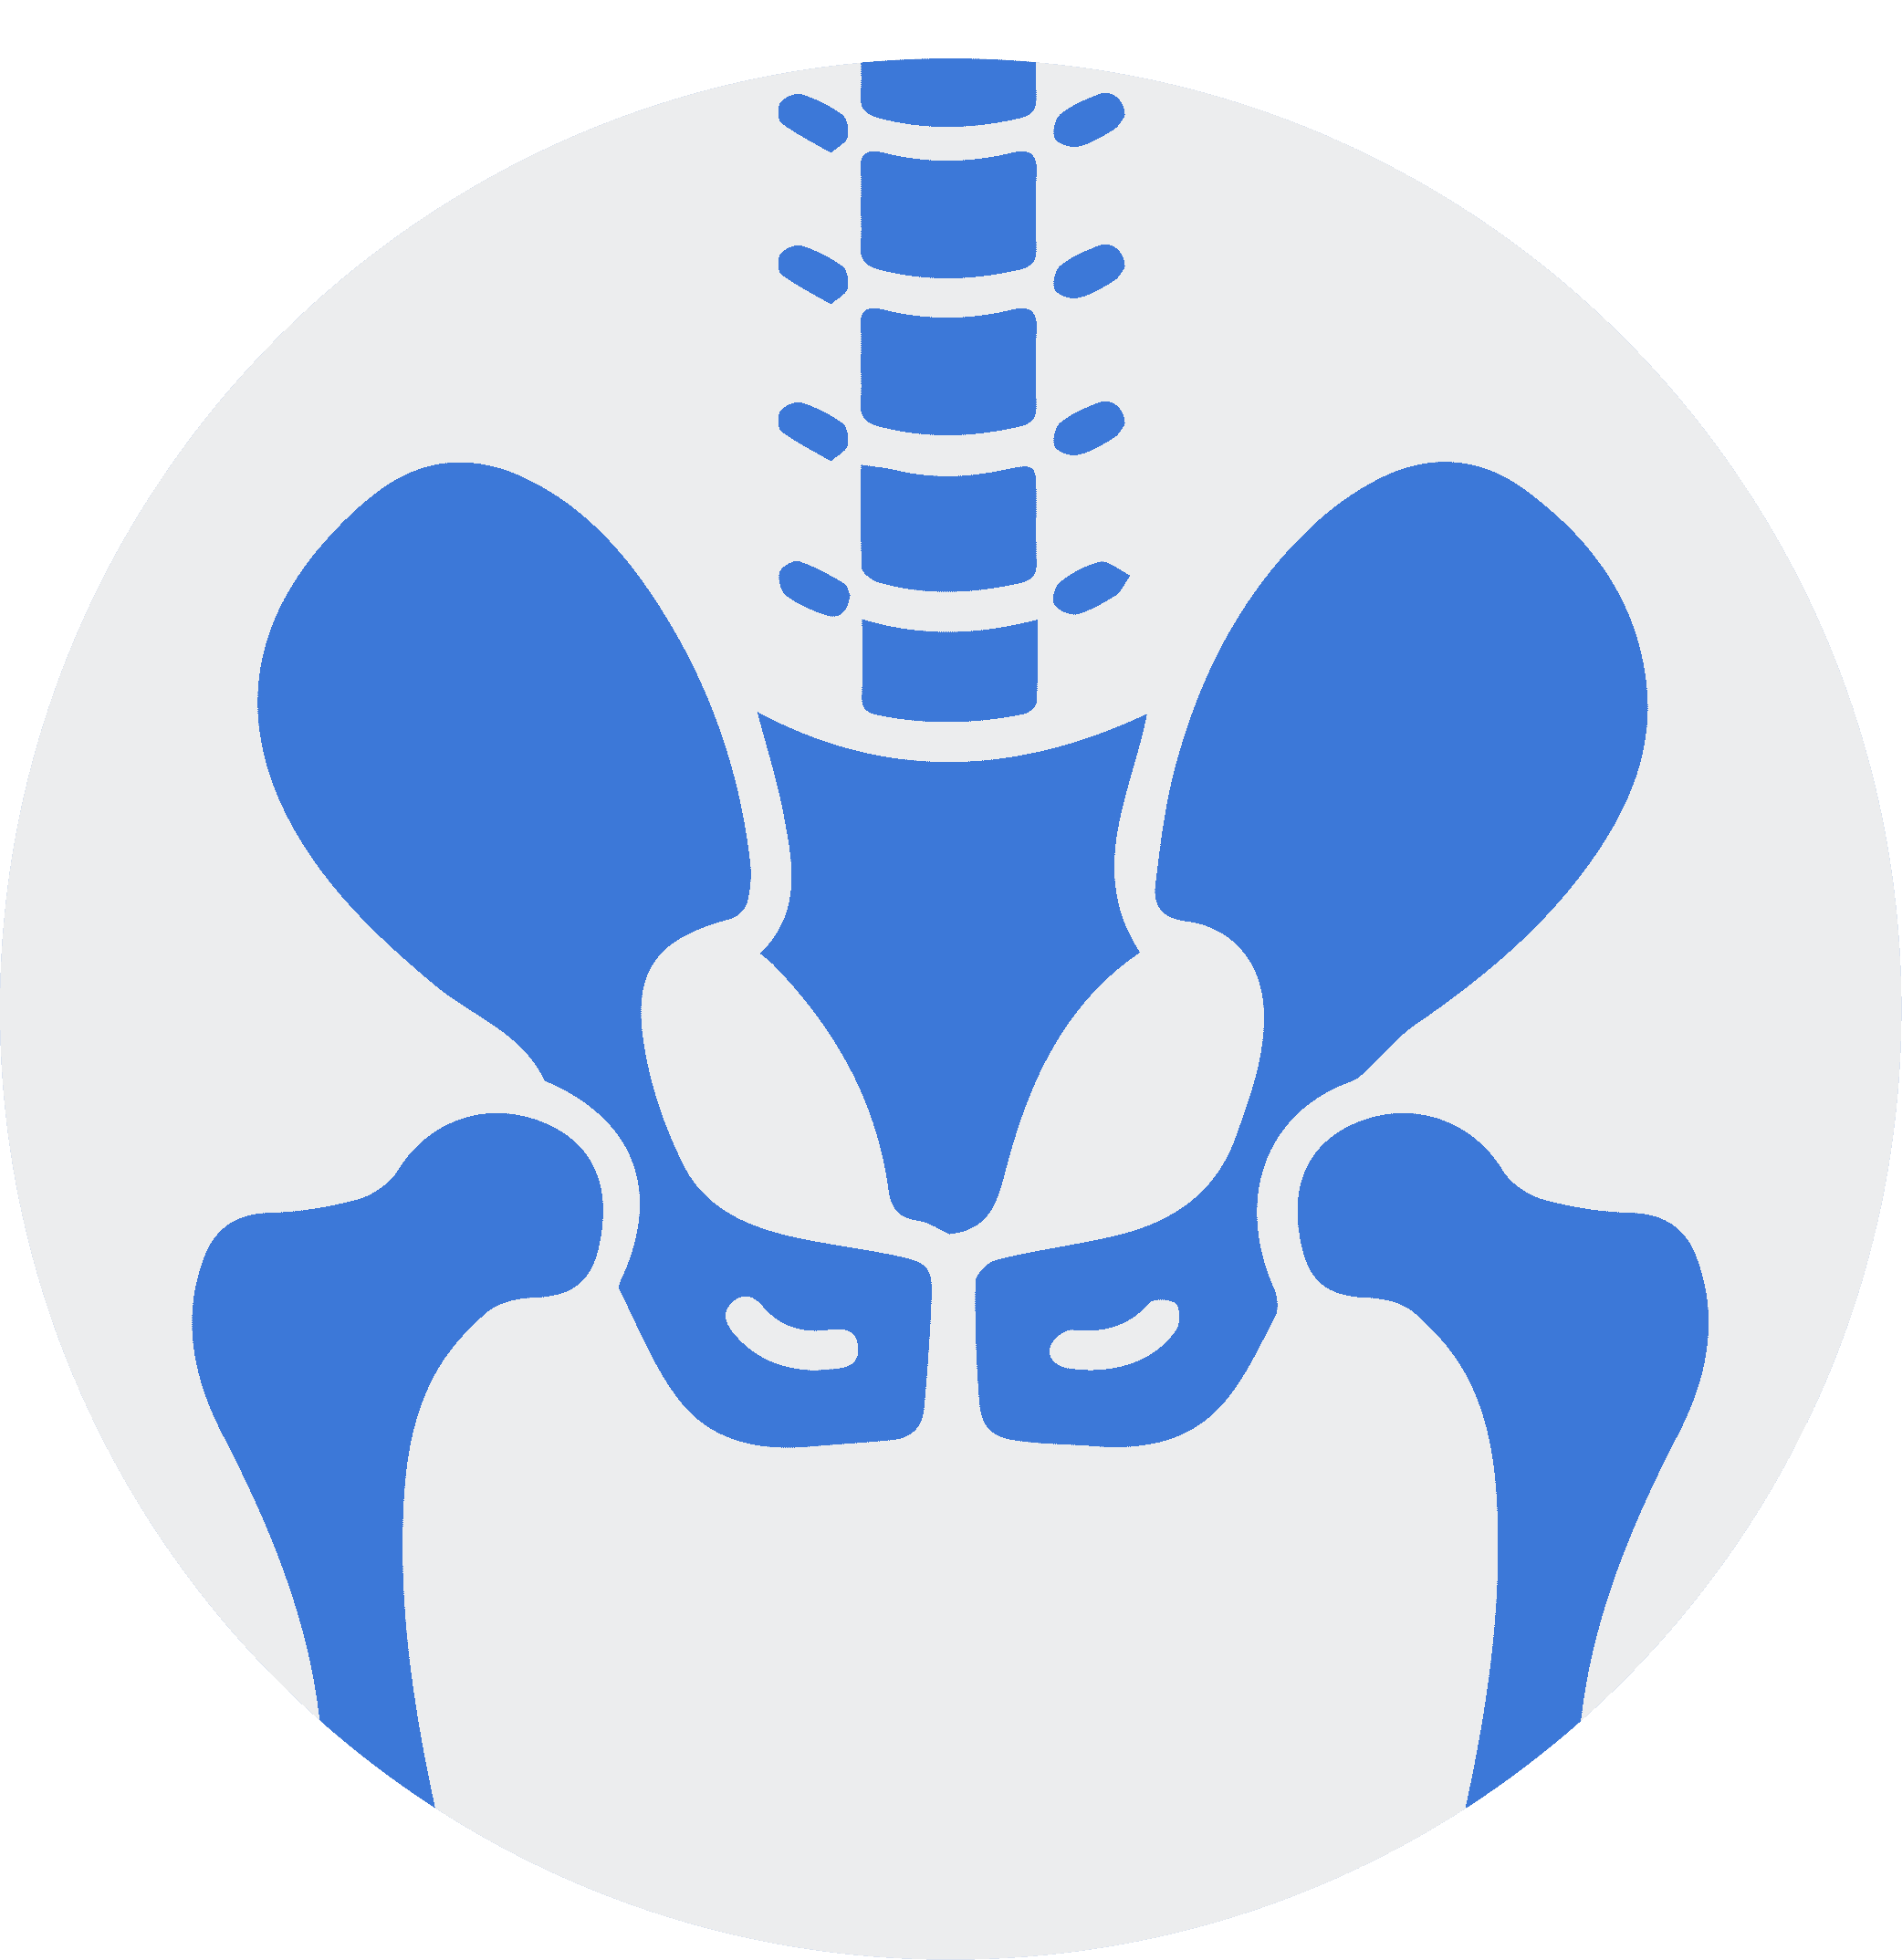 pelvic icon with bones